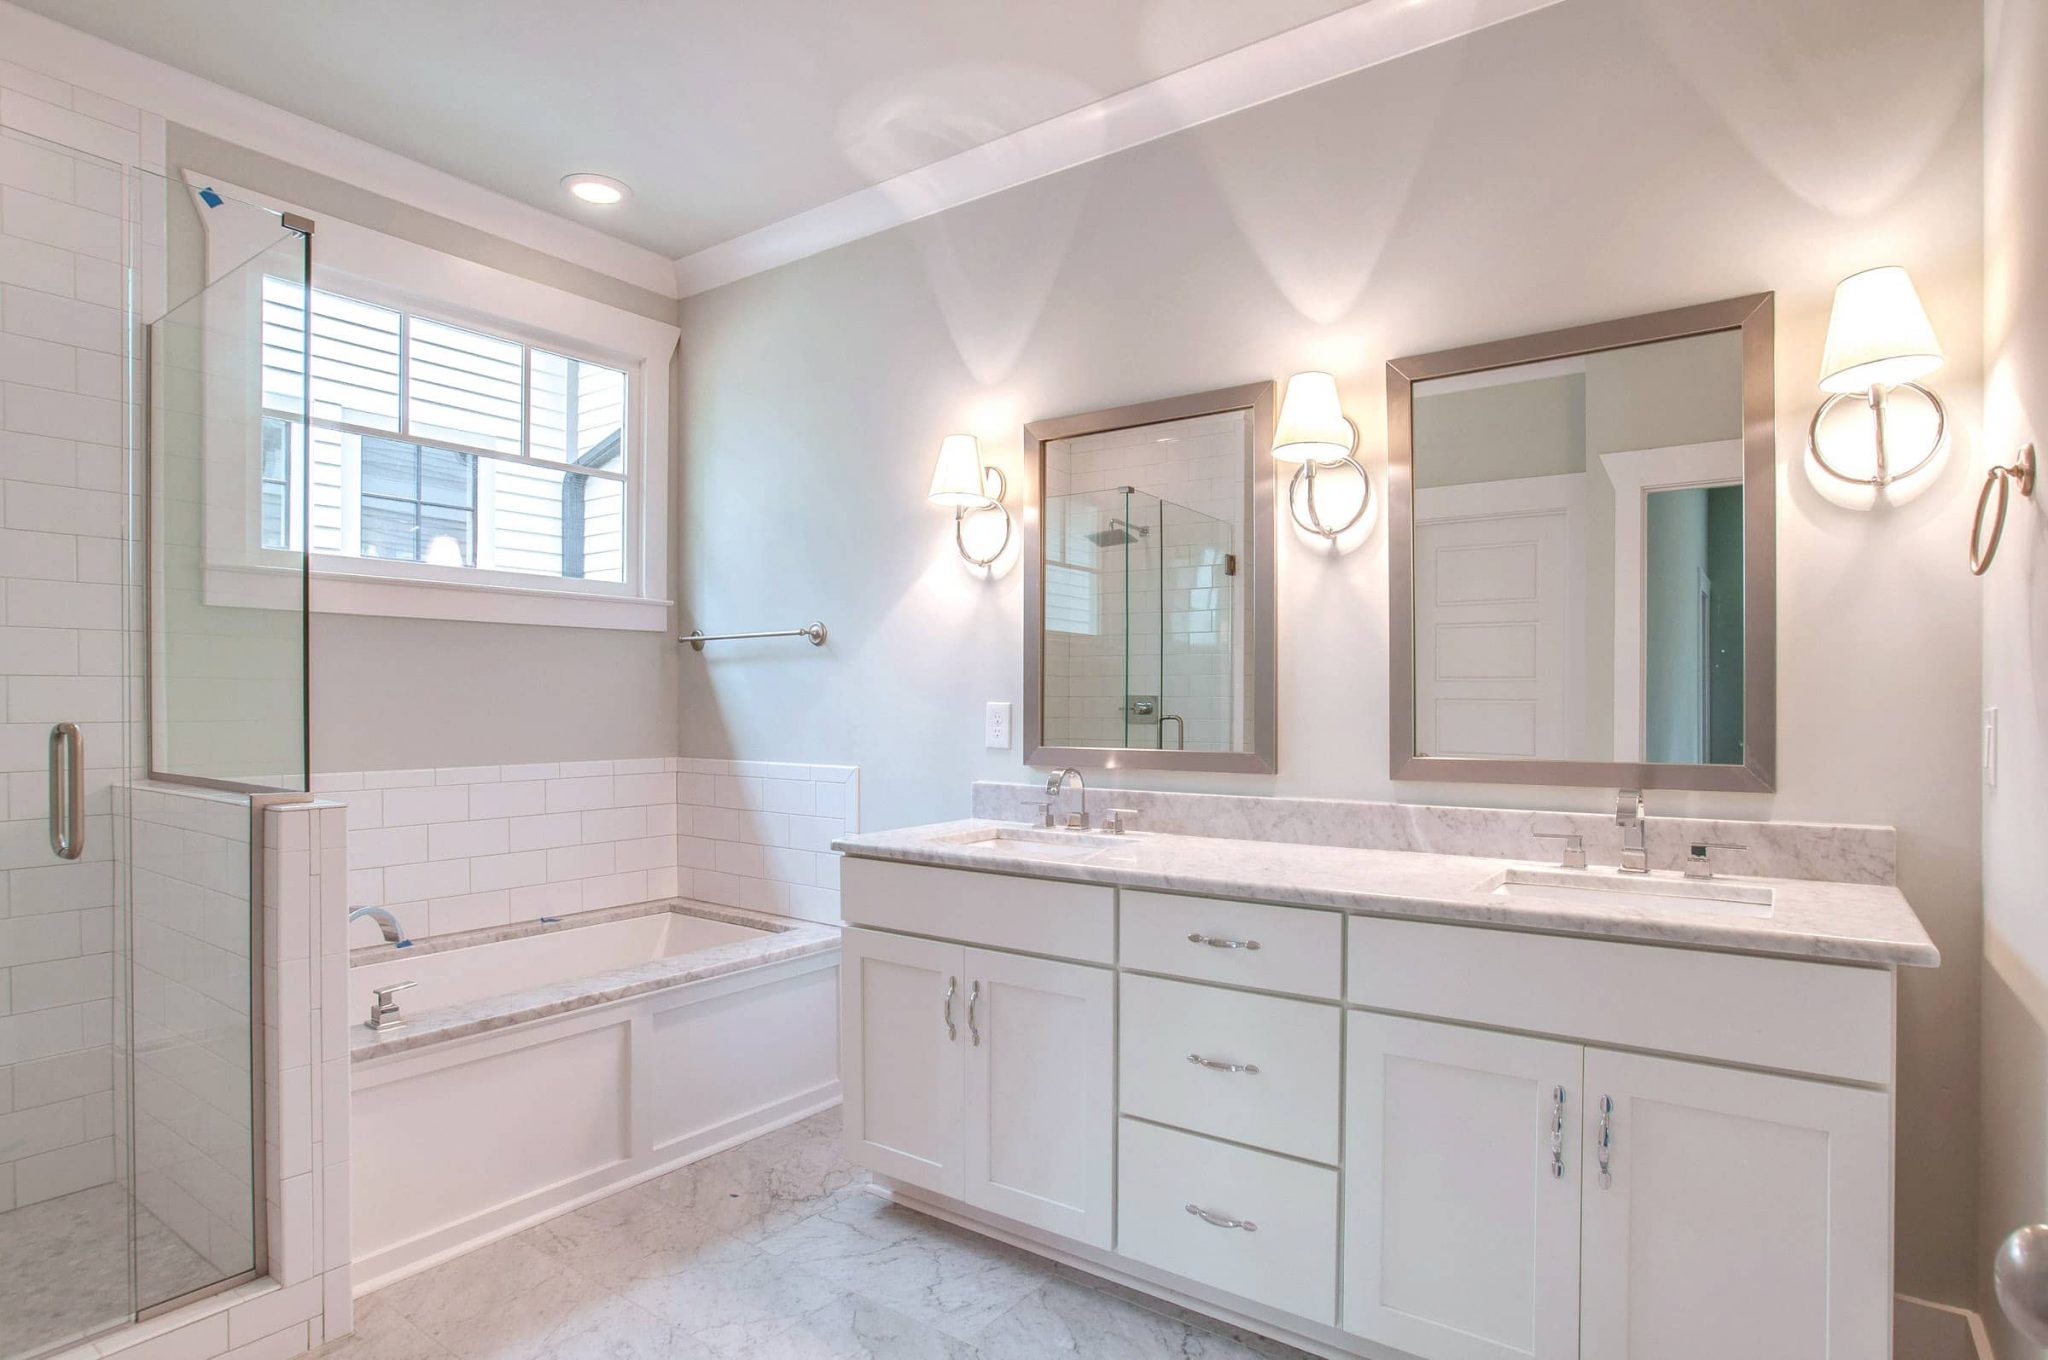 Cost Of Replacing Bathroom Vanity